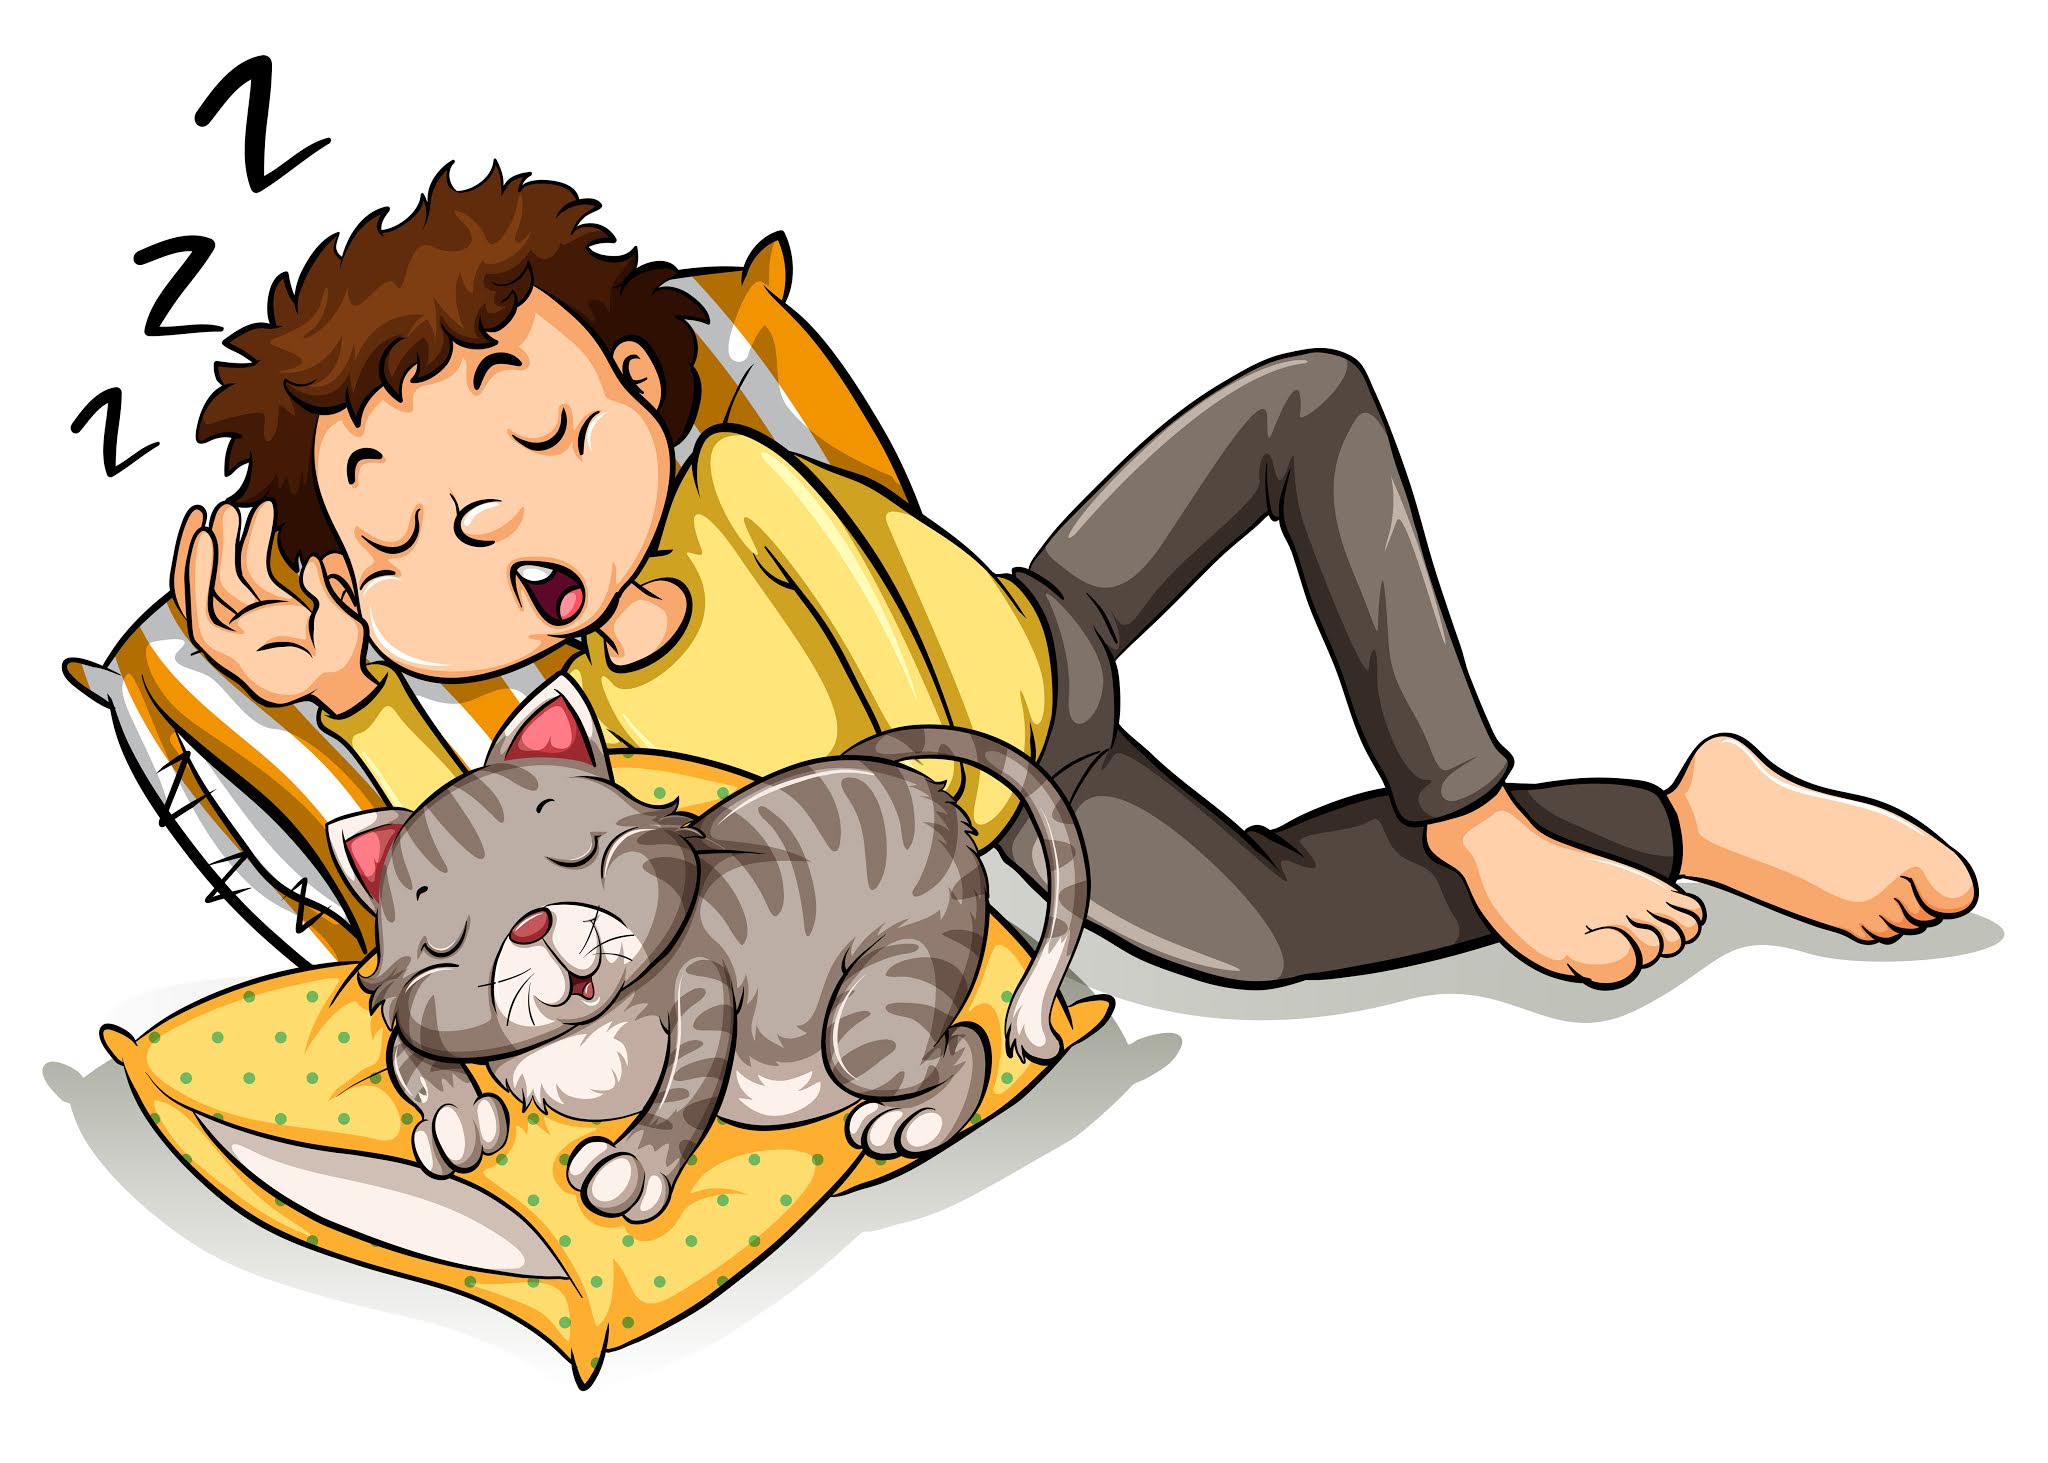 Rule 34 cat nap. Дремать рисунок. Cat nap для детей. Catnap мультяшный. Cat nap рисунок.